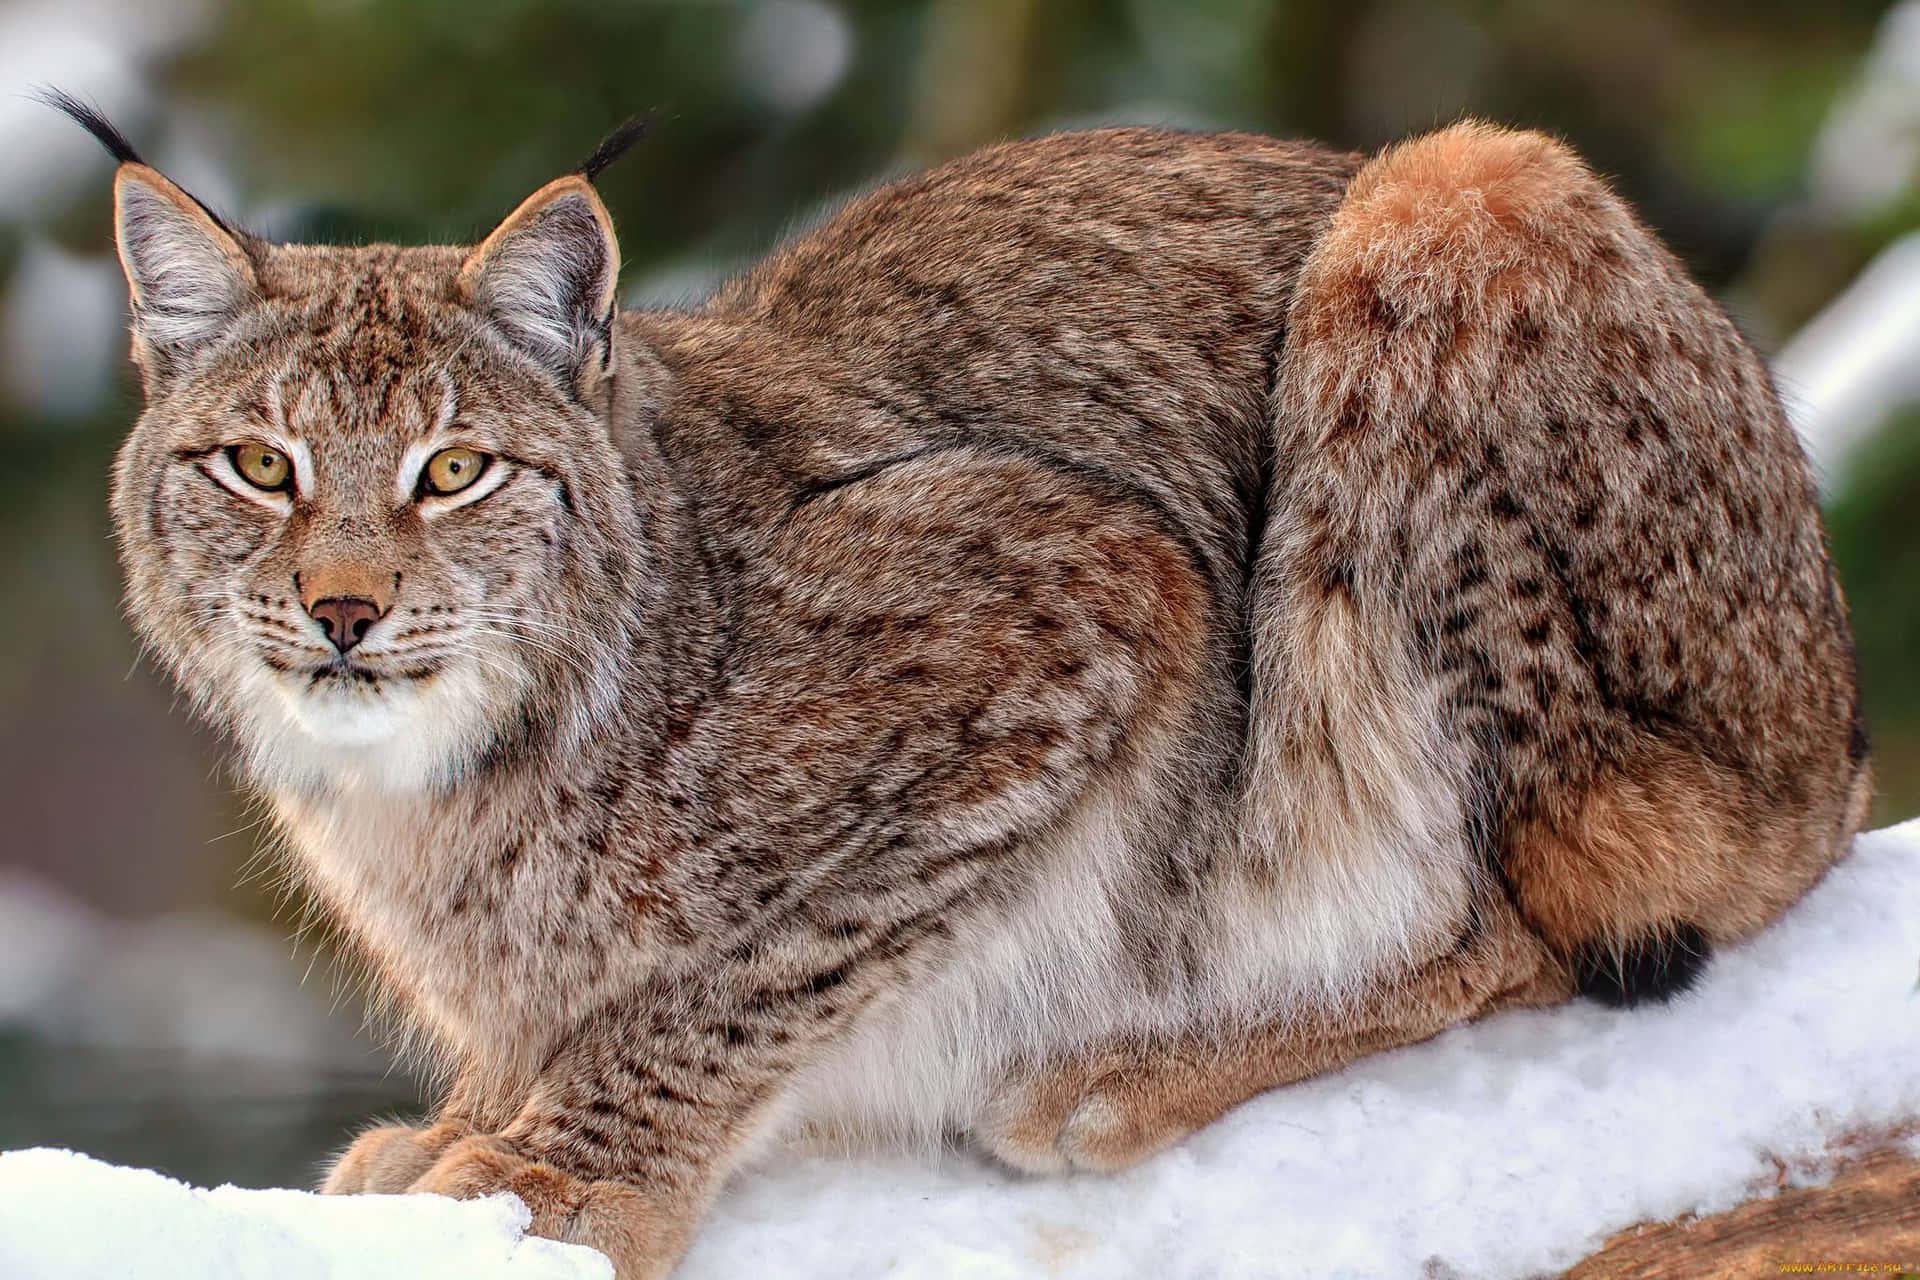 Eurasian Lynxin Snow Background